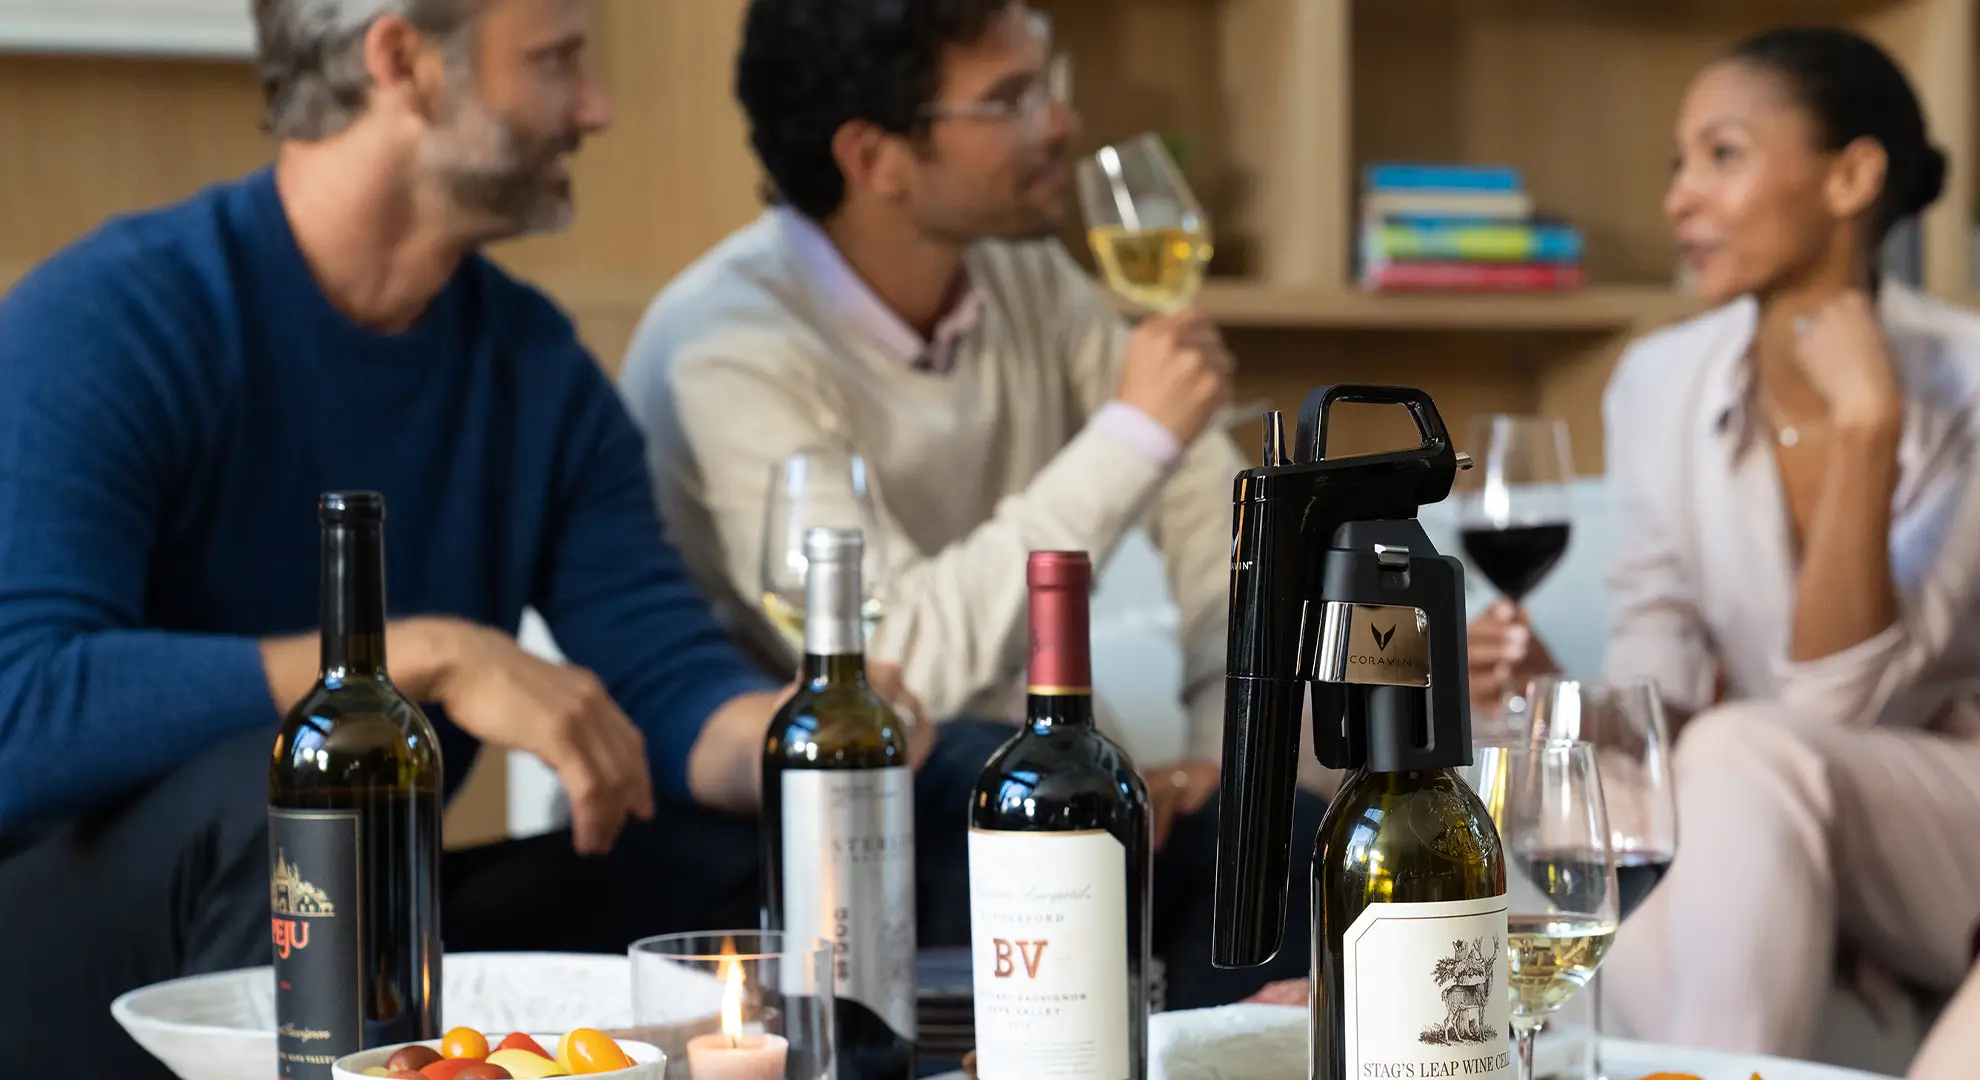 Amici che socializzano in un soggiorno con vino e stuzzichini, con un sistema di conservazione del vino Coravin.
